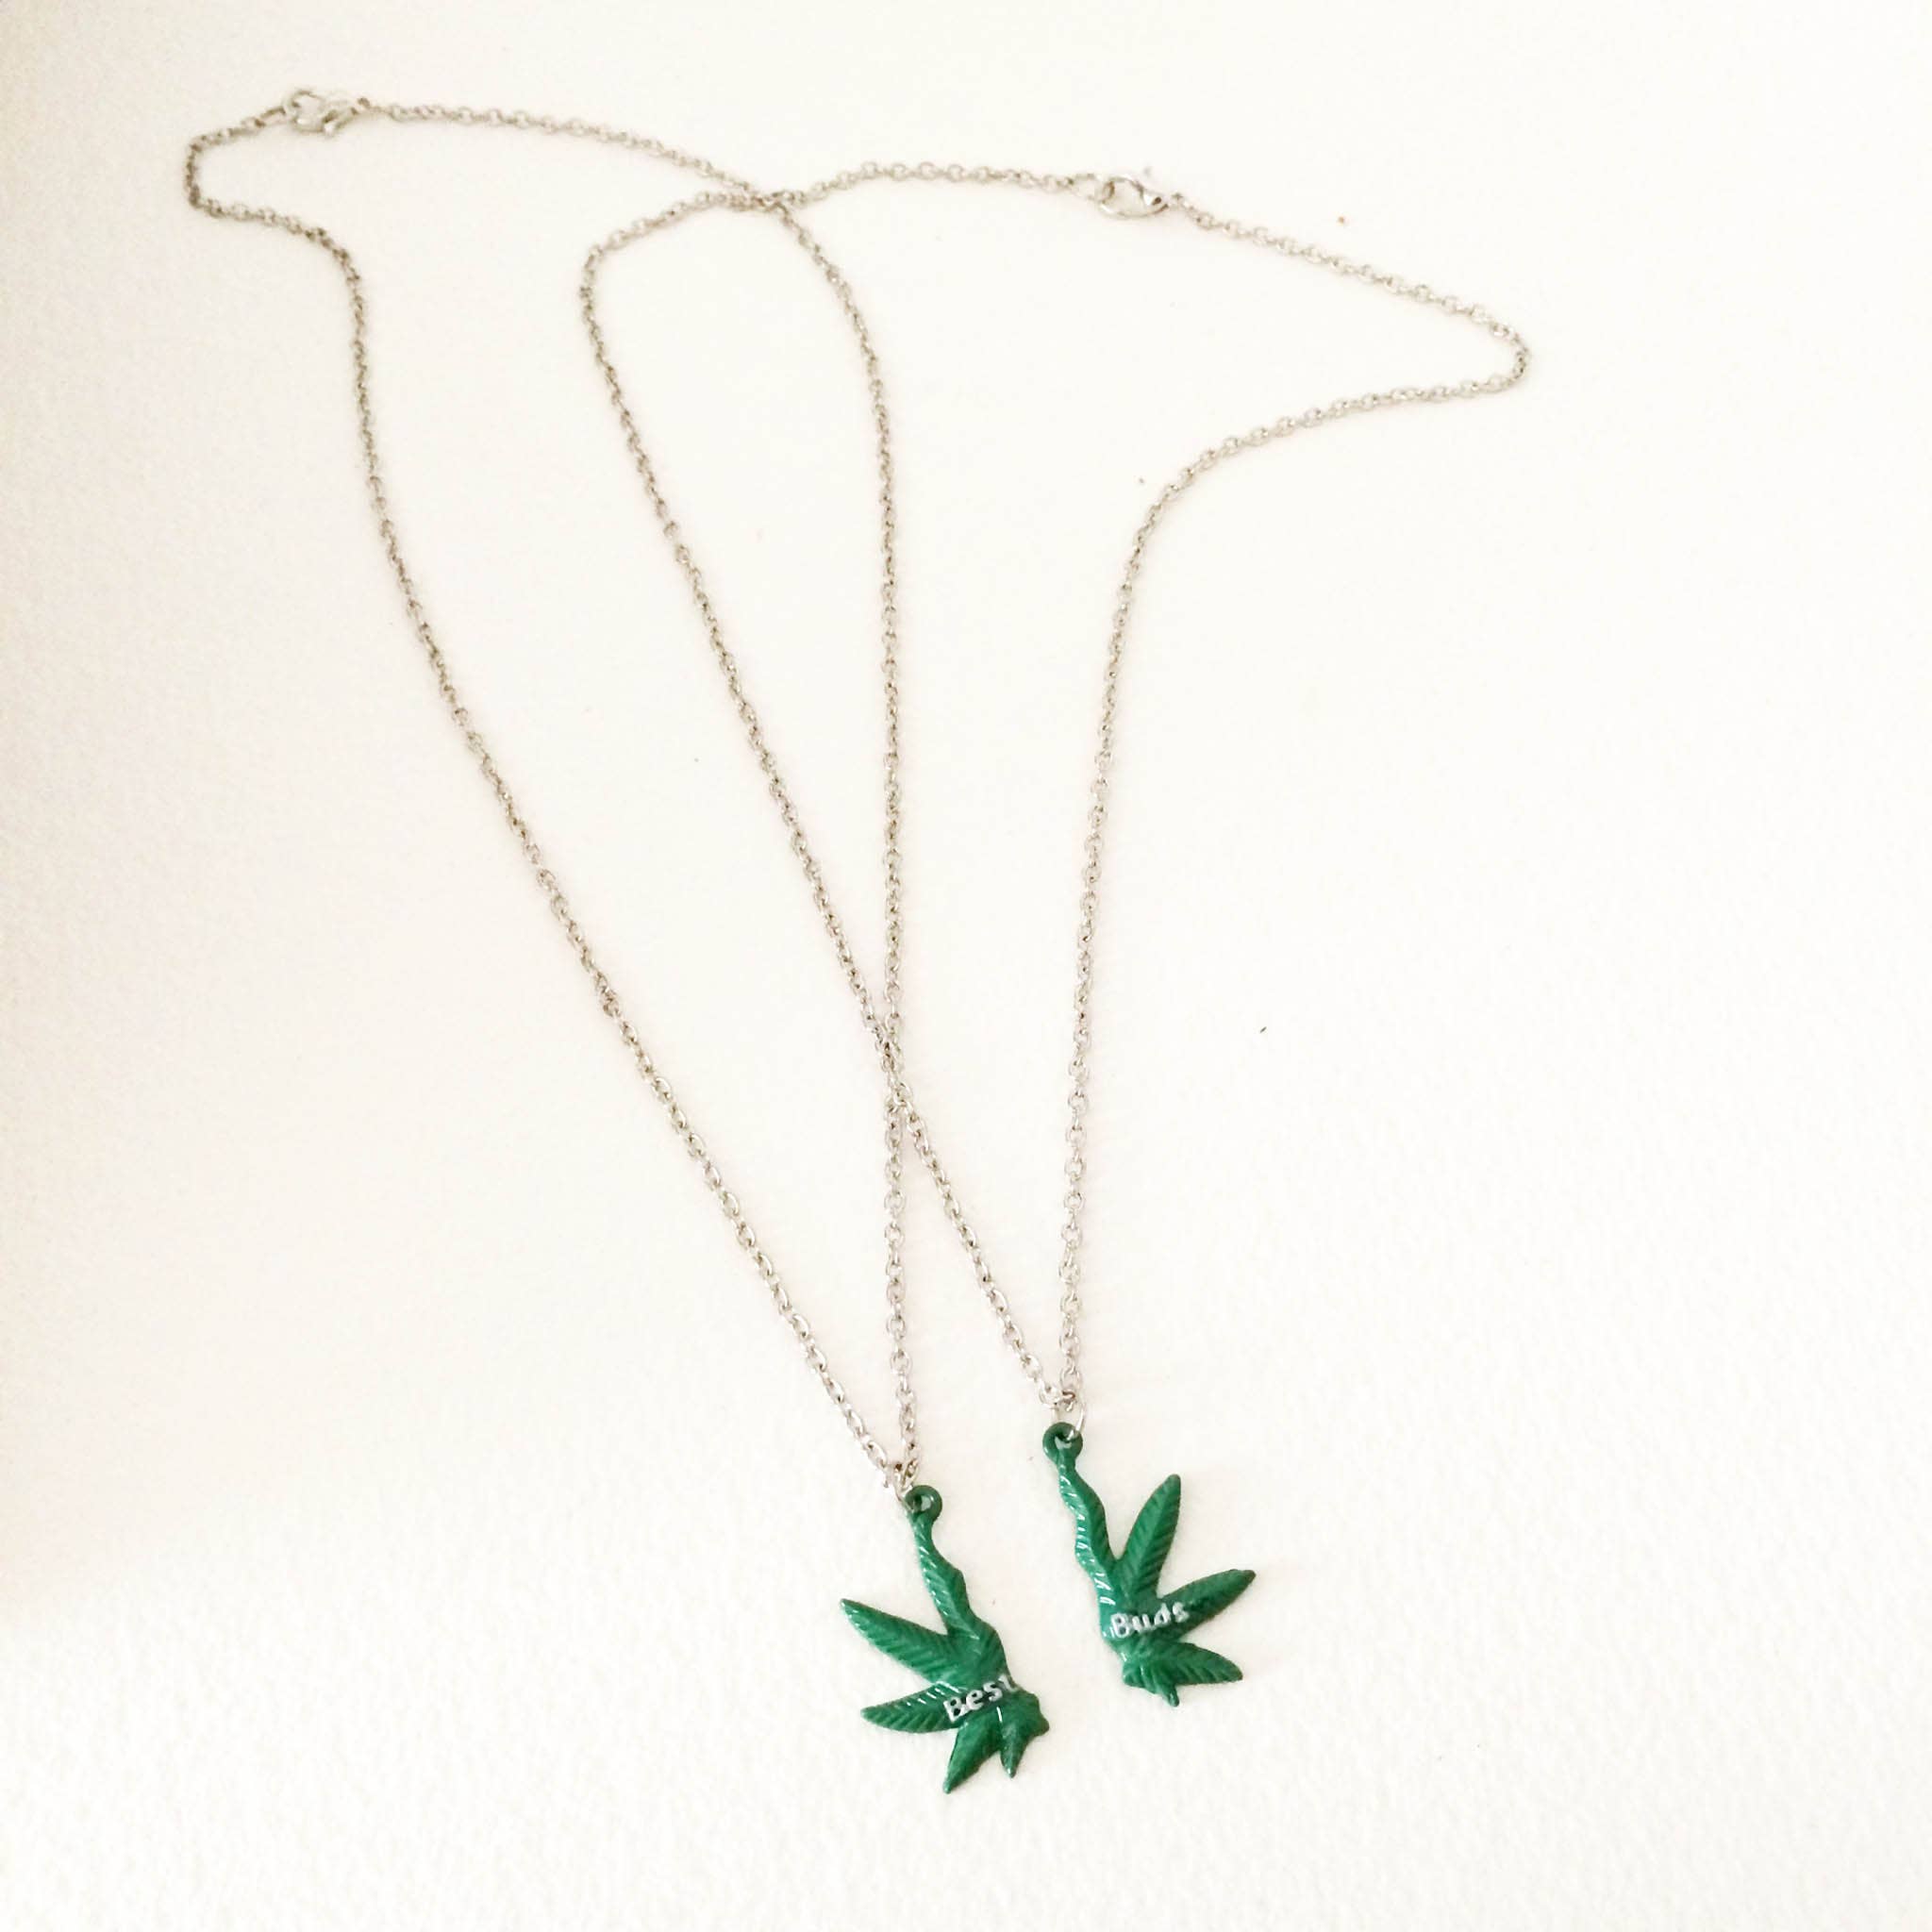 Buy Cannabis Marijuana Leaf Pendant, Antique Silver Tone, Hemp Leaf Pendant,  Weed Necklace, Boho Jewelry, Men's Necklace, Women's Necklace Online in  India - Etsy